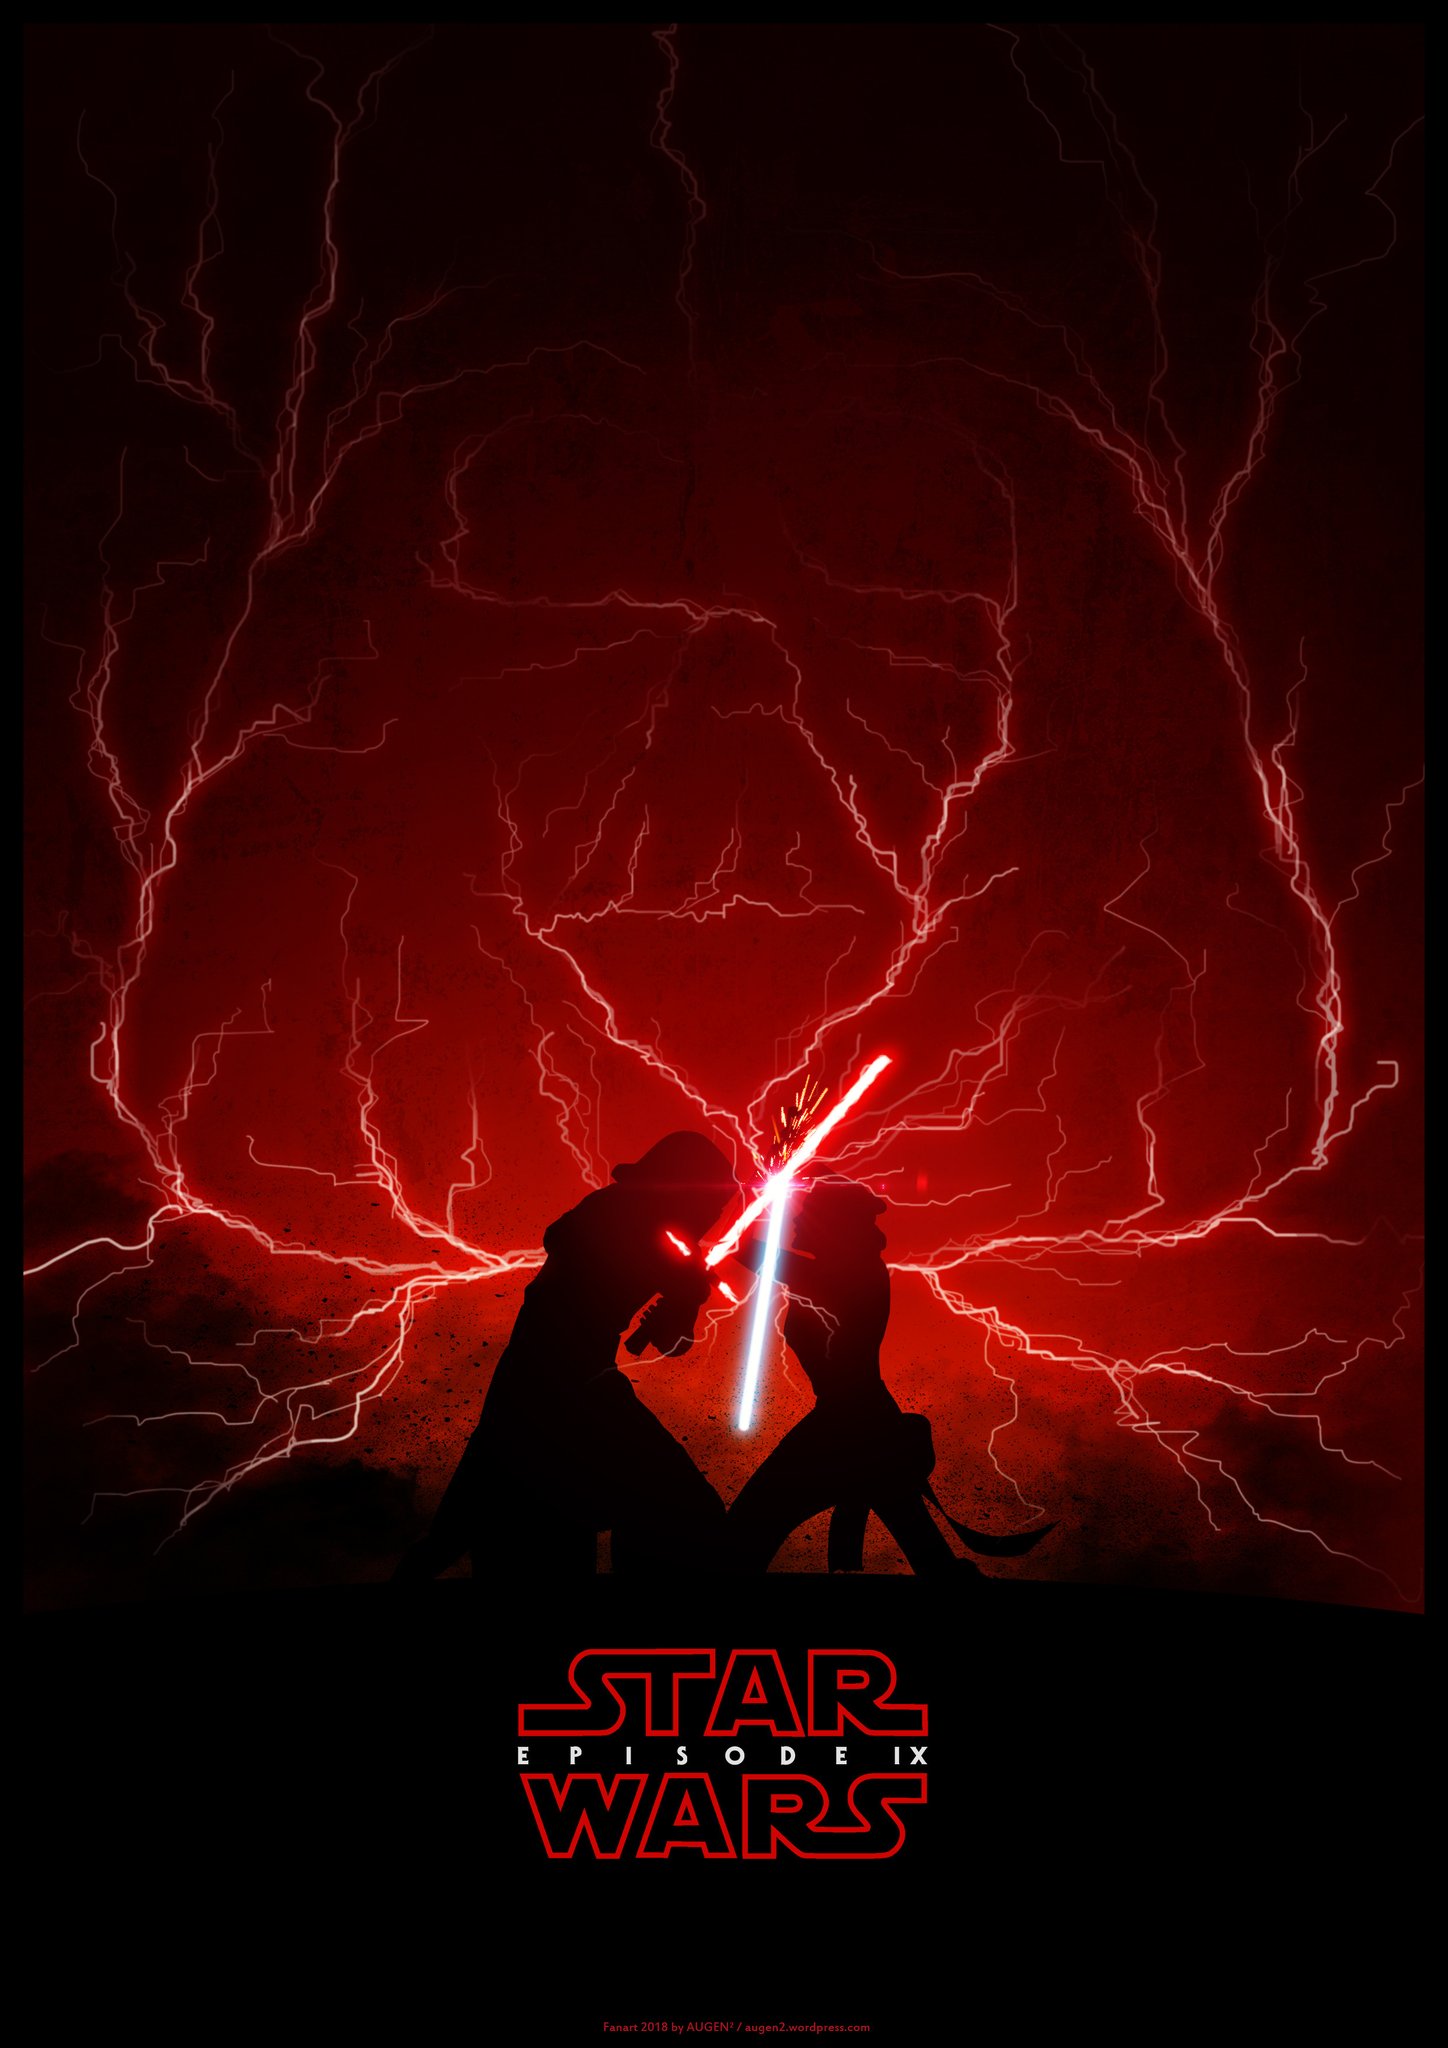 Star Wars Episode 9 fanart poster   Album on Imgur